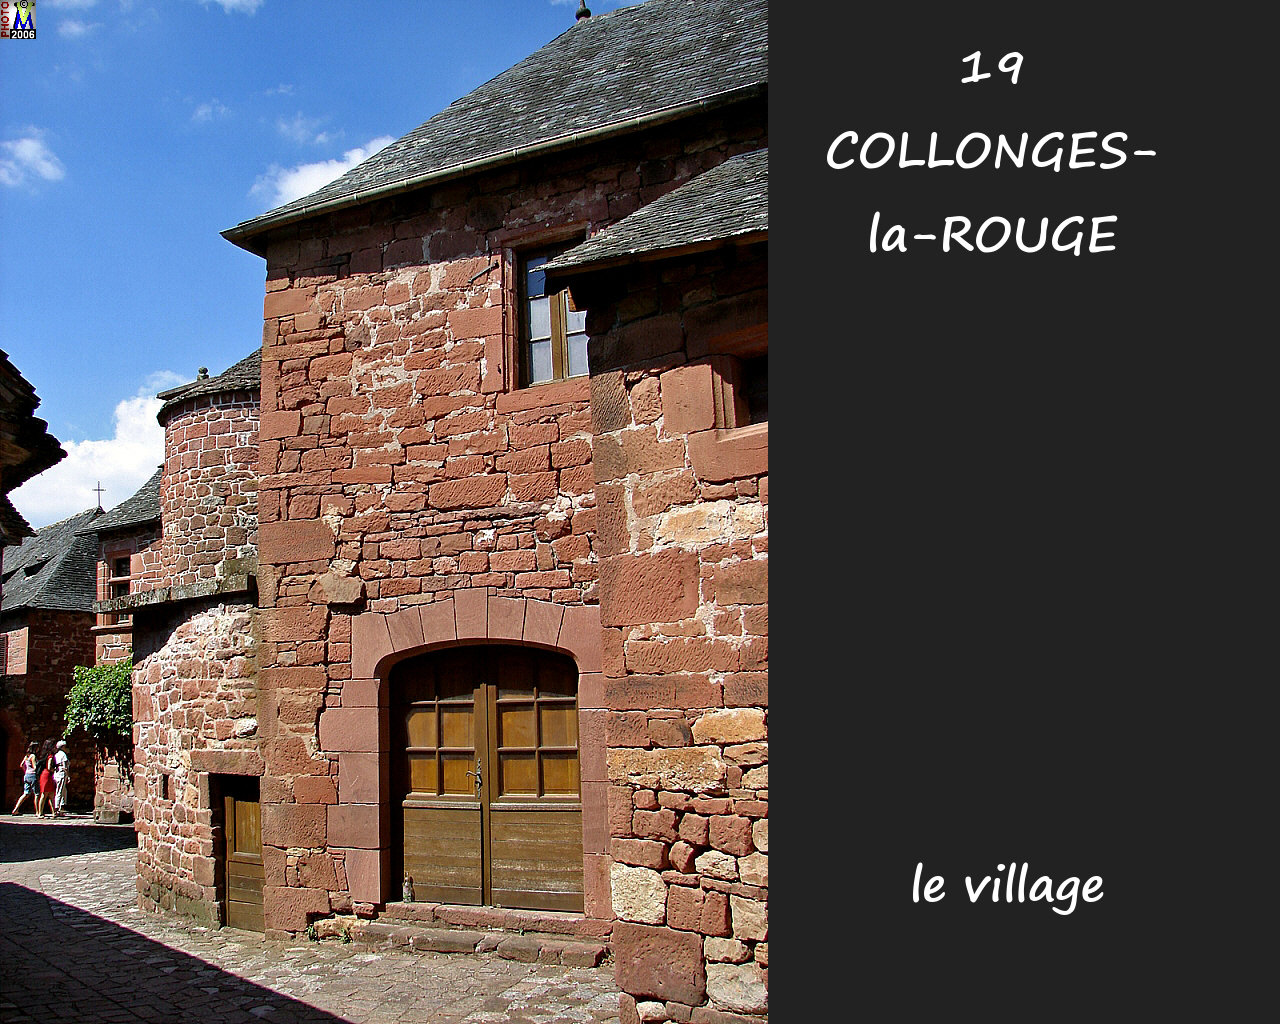 19COLLONGES-ROUGE_village_188.jpg